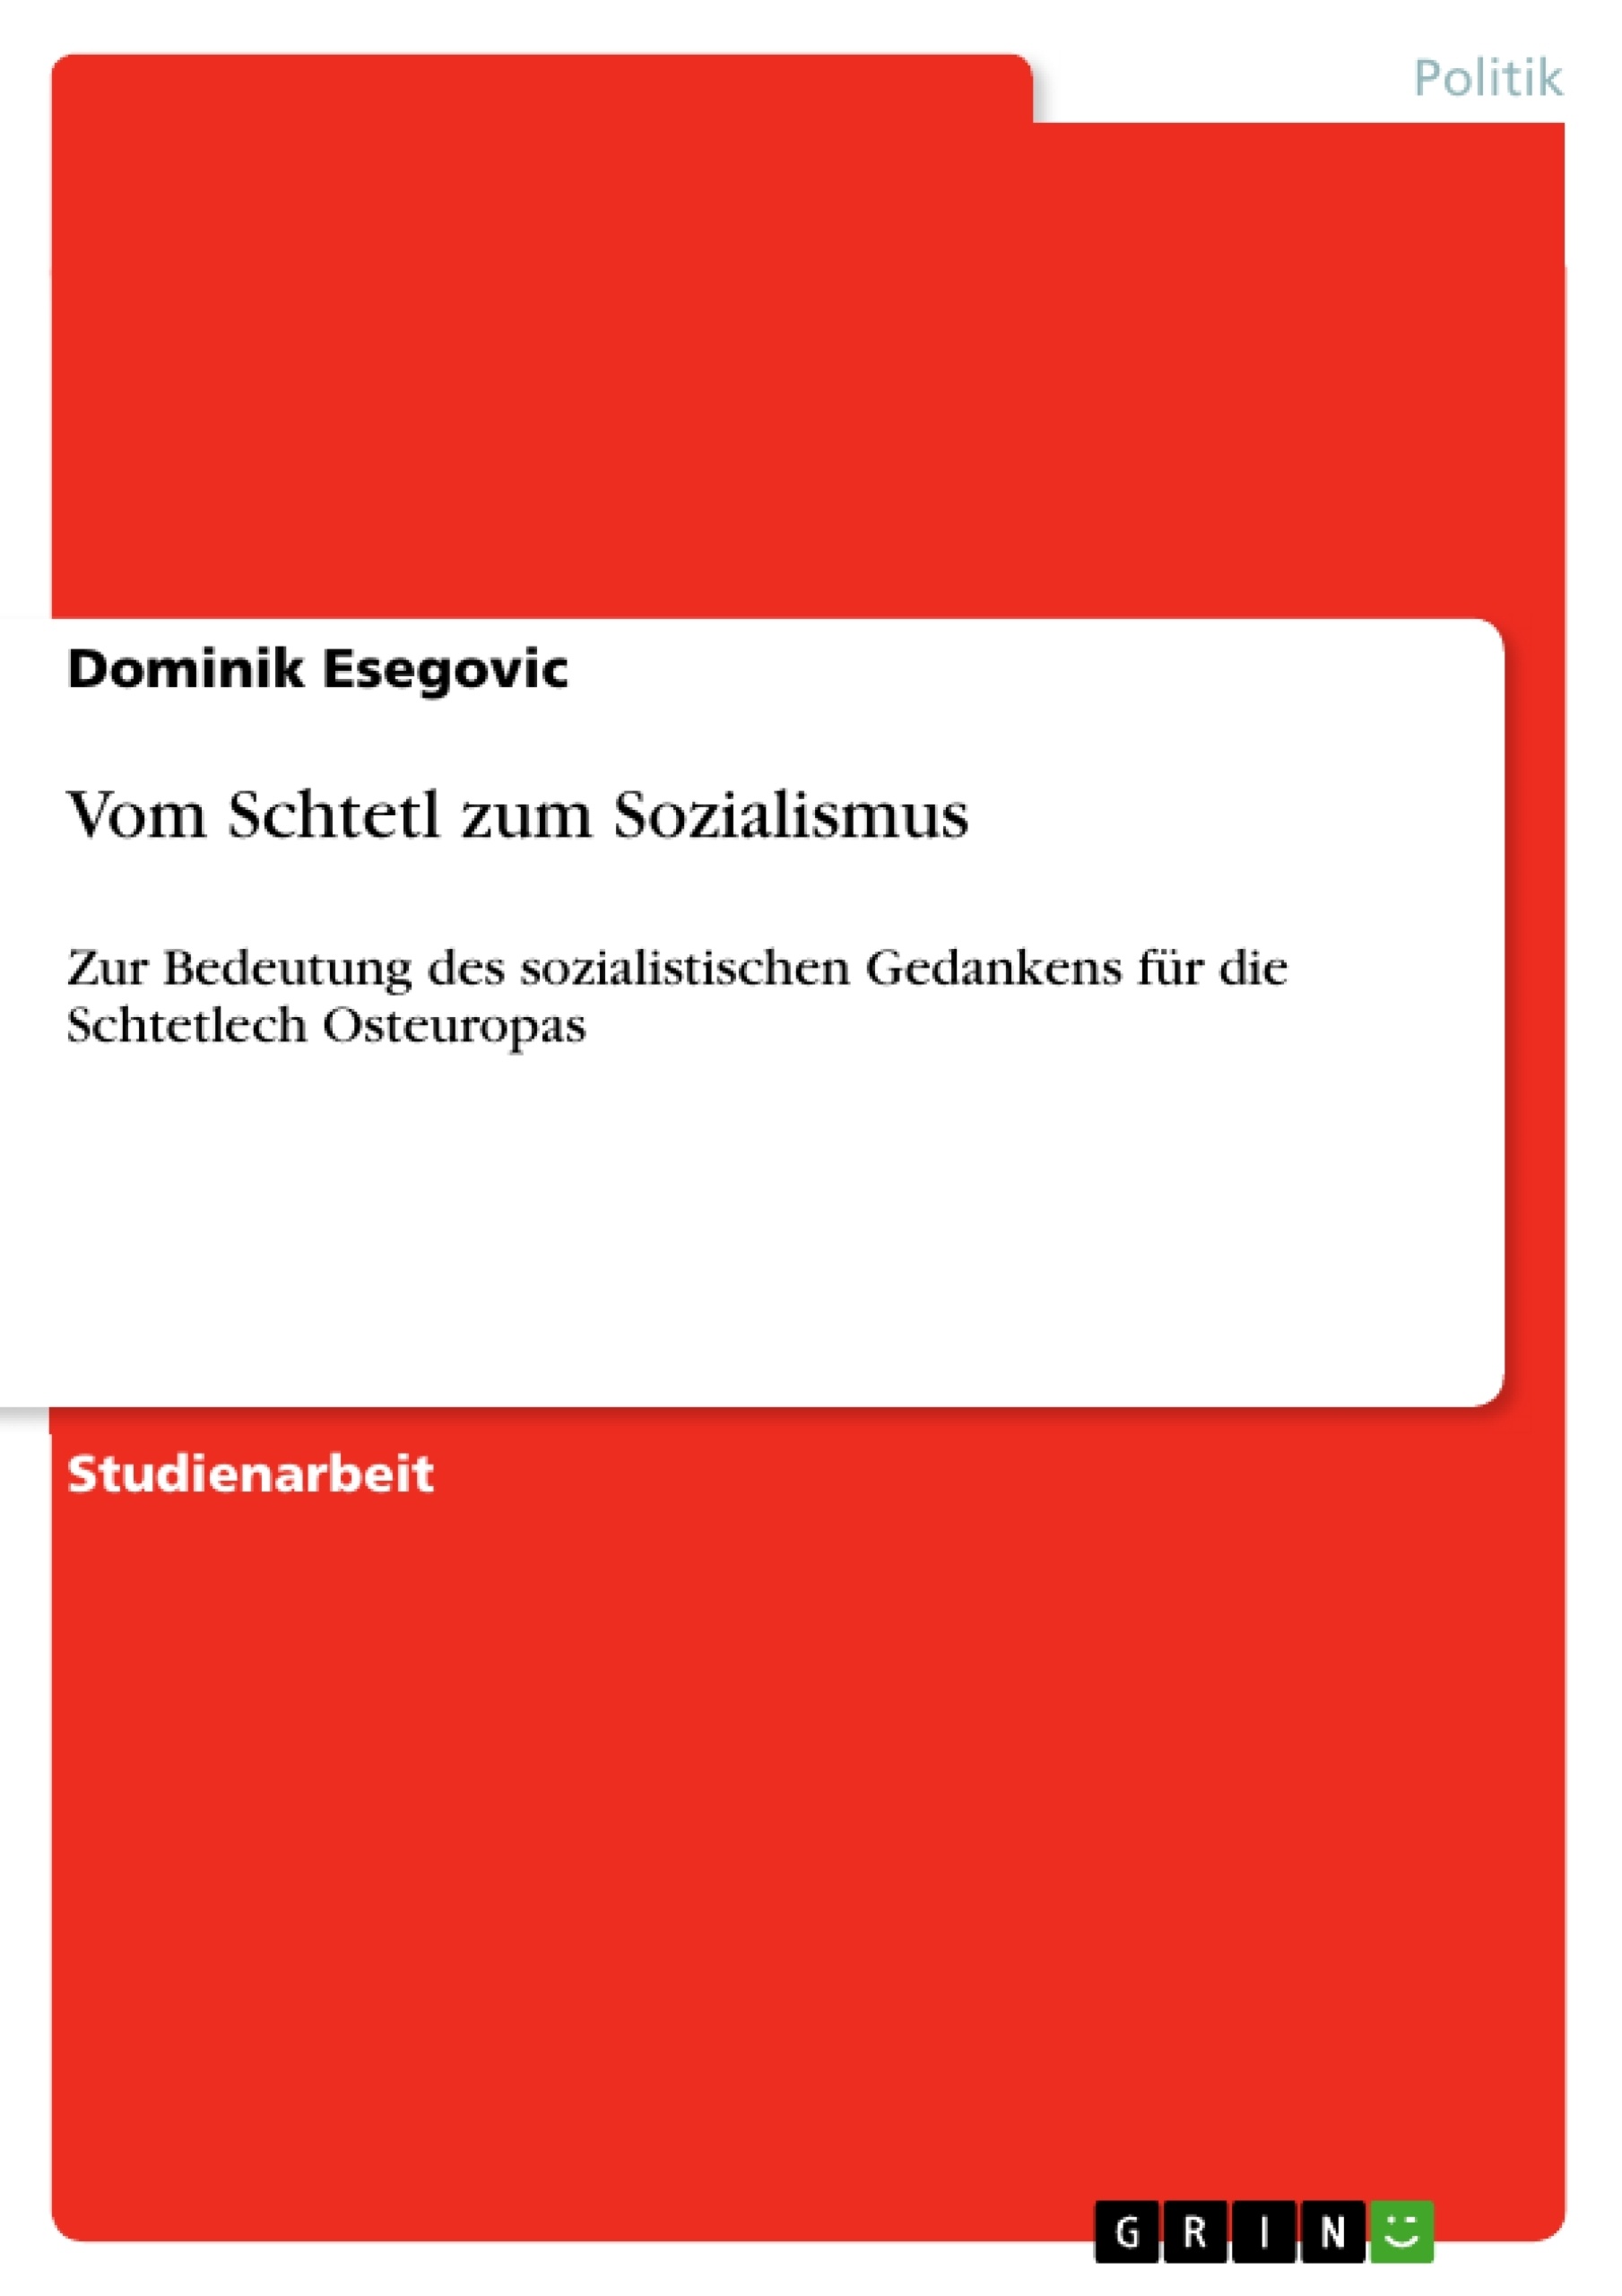 Title: Vom Schtetl zum Sozialismus